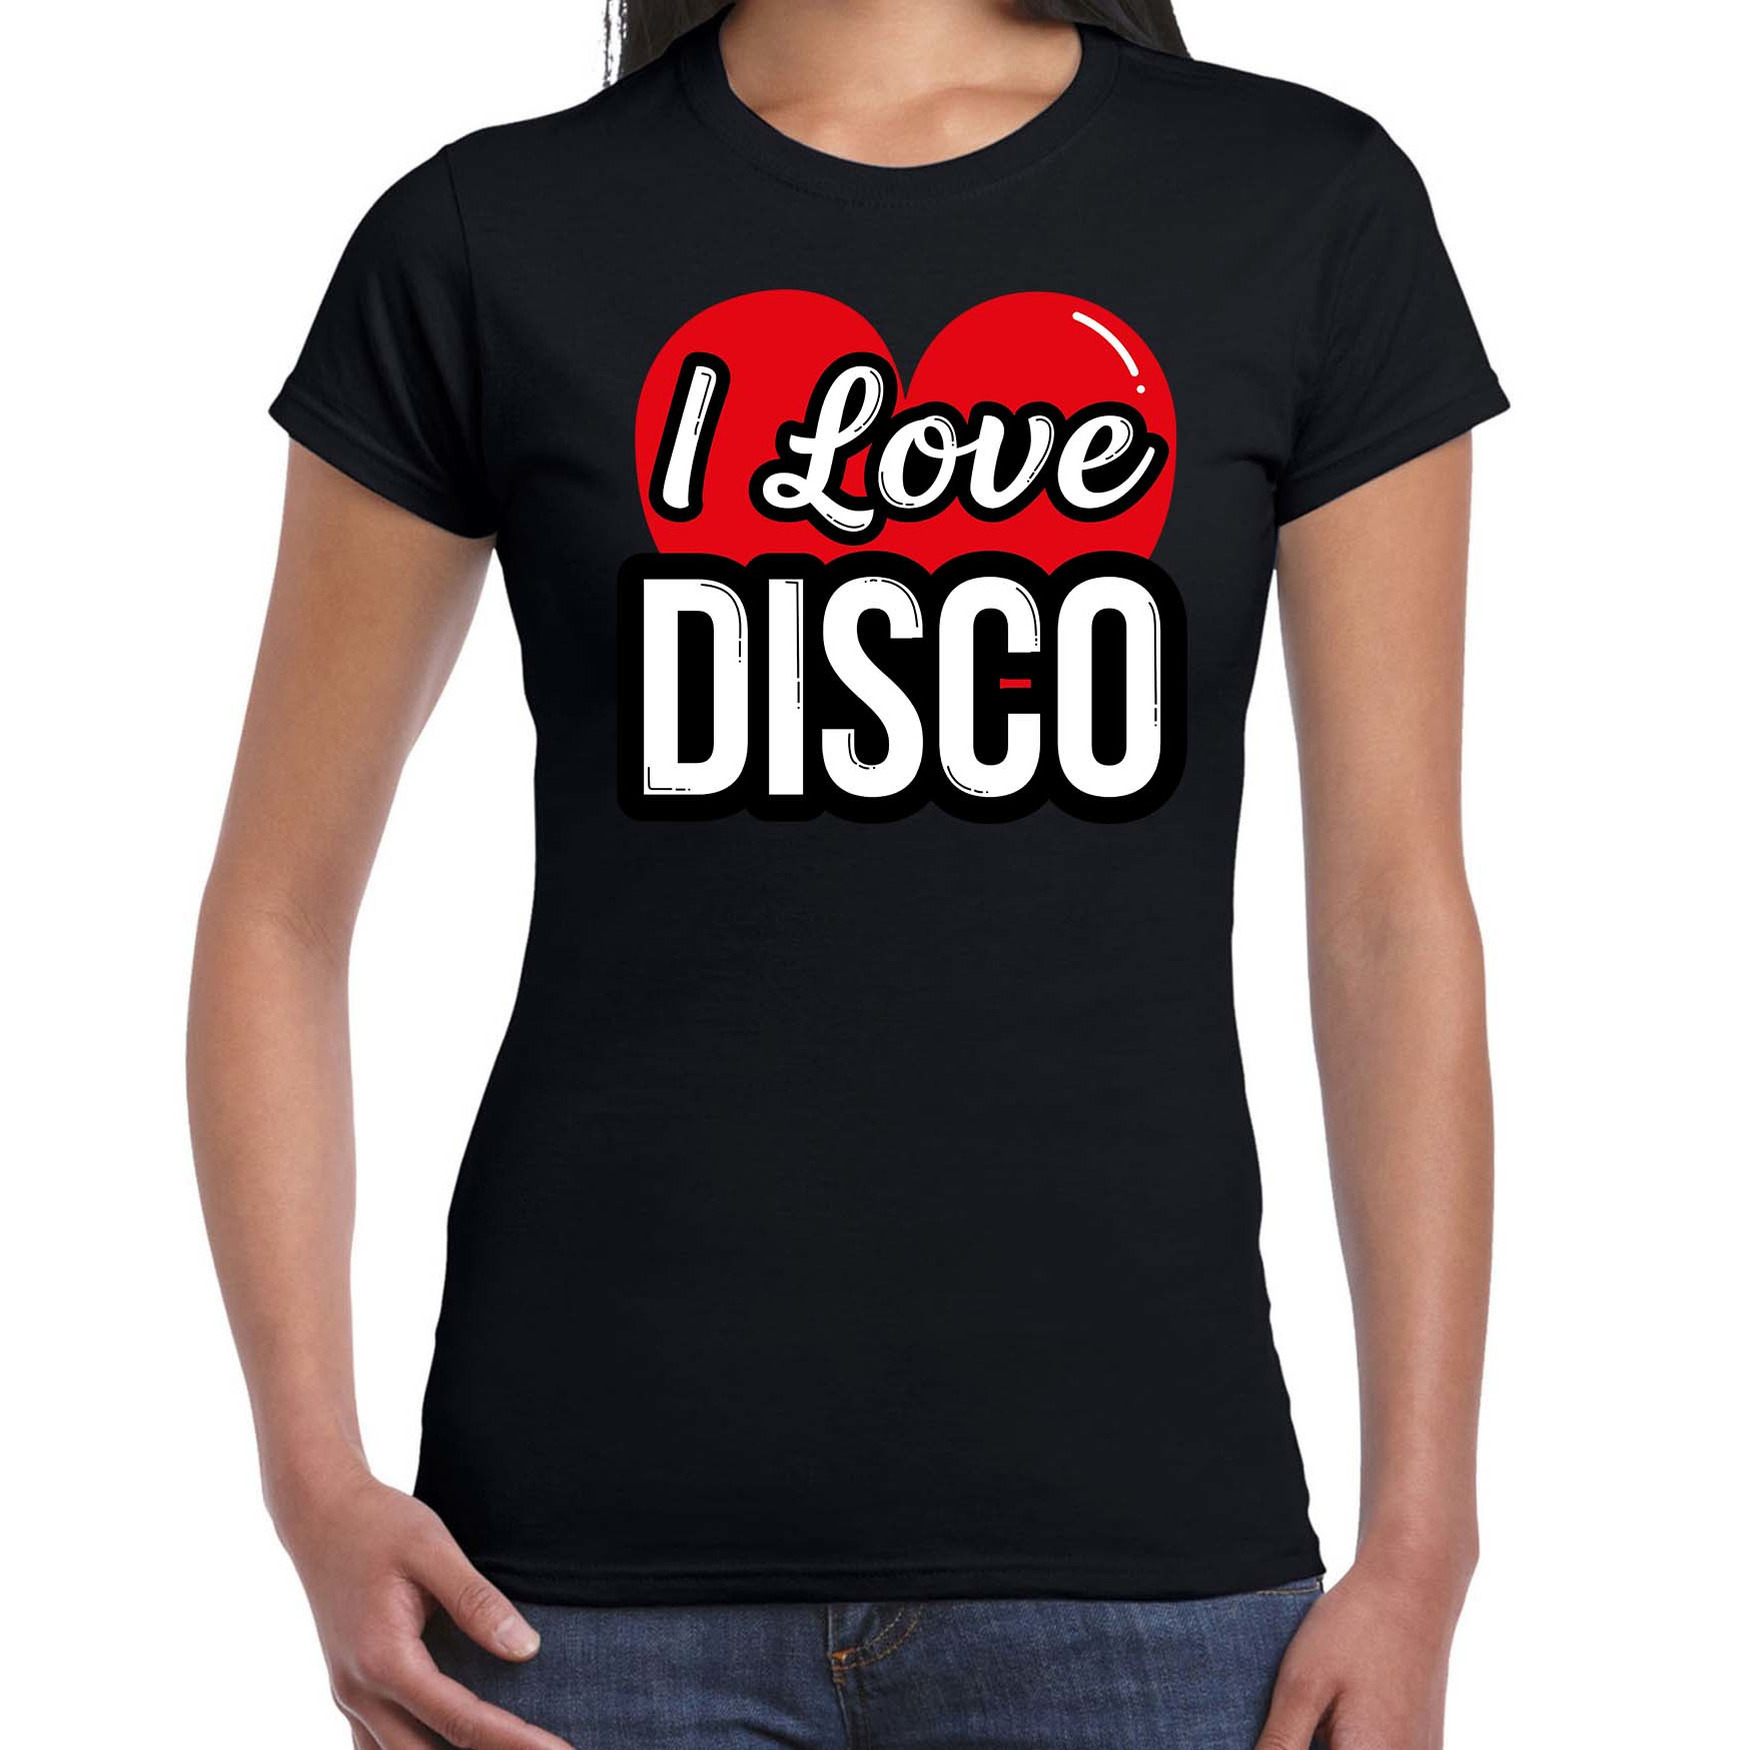 I love disco verkleed t-shirt zwart voor dames Disco party verkleed outfit